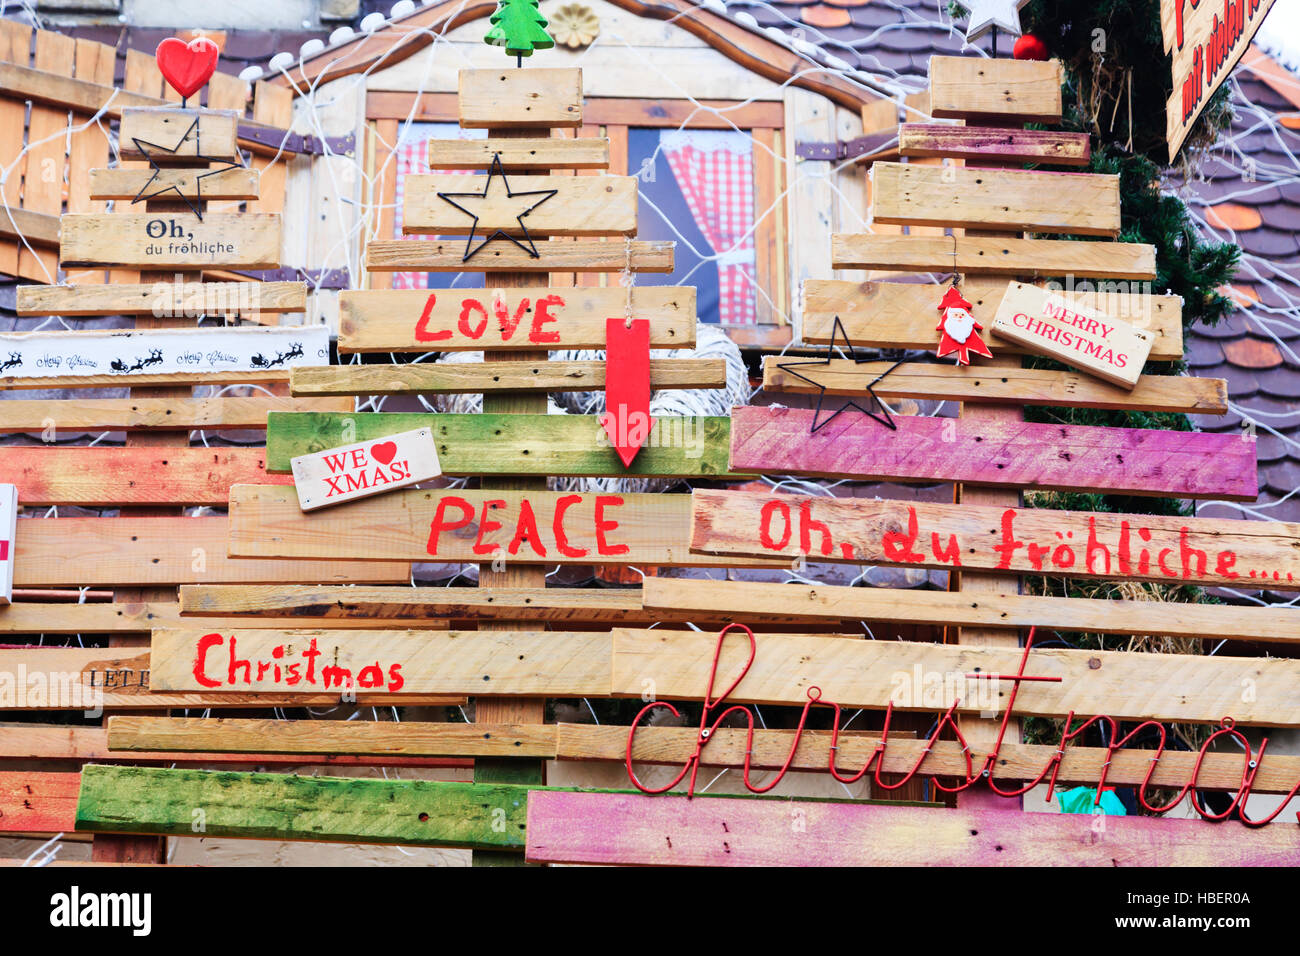 Weihnachts-Nachrichten in Deutsch und Englisch, Bremen Xmas Market 2016 Stockfoto